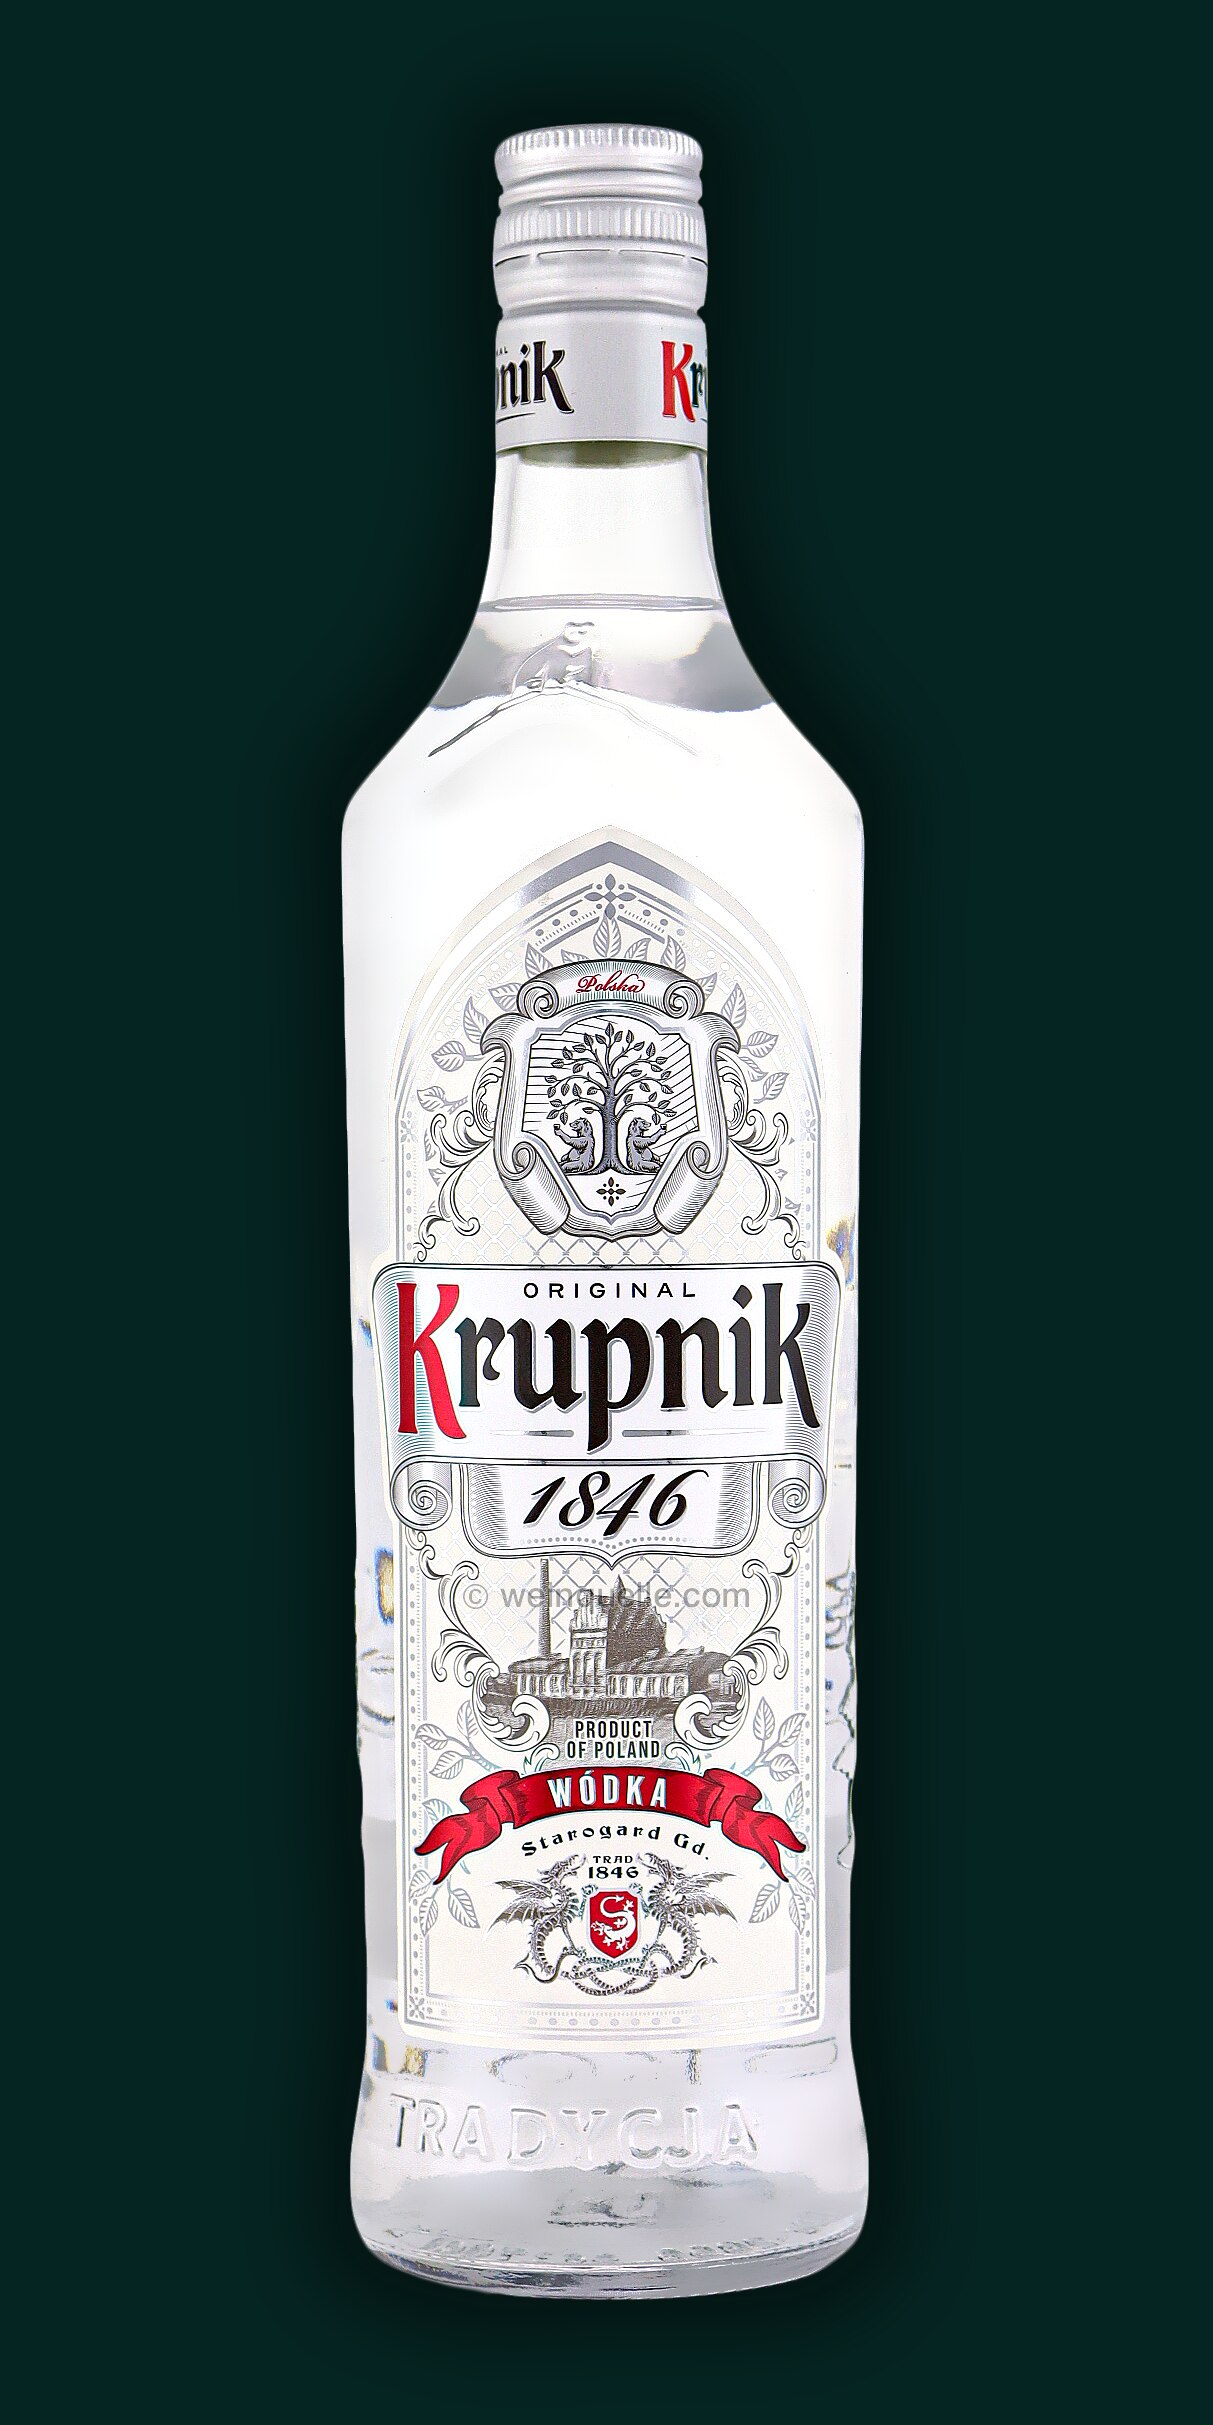 Krupnik 40% Premium Vodka, 11,95 € Weinquelle - Lühmann